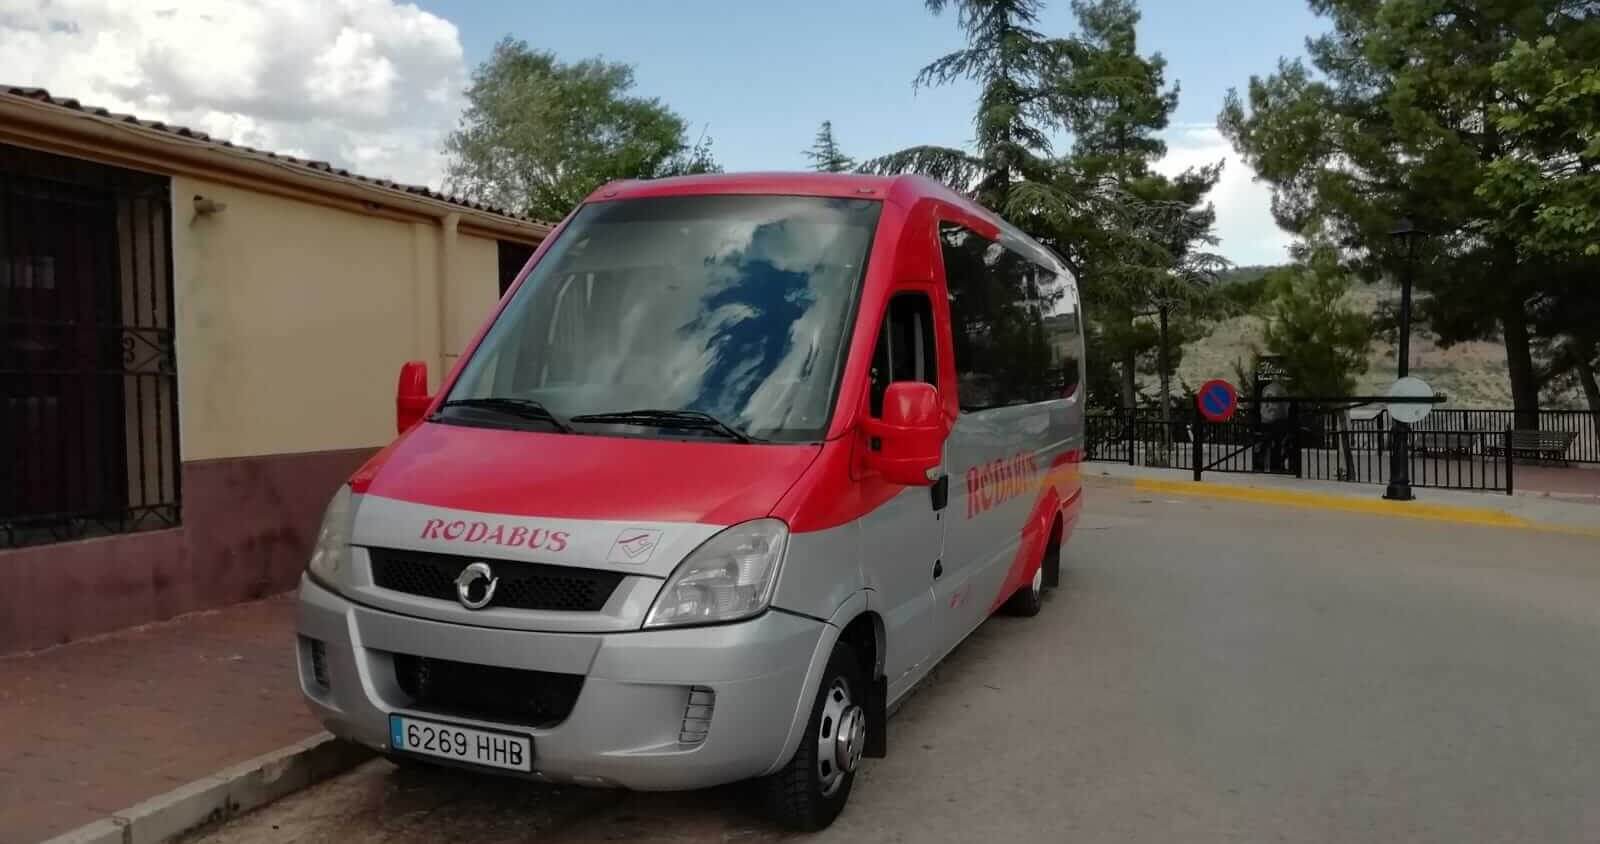 Hire a 16 seater Minibus  (. Bus pequeño con los servicios básicos  2005) from RODABUS in Albacete 